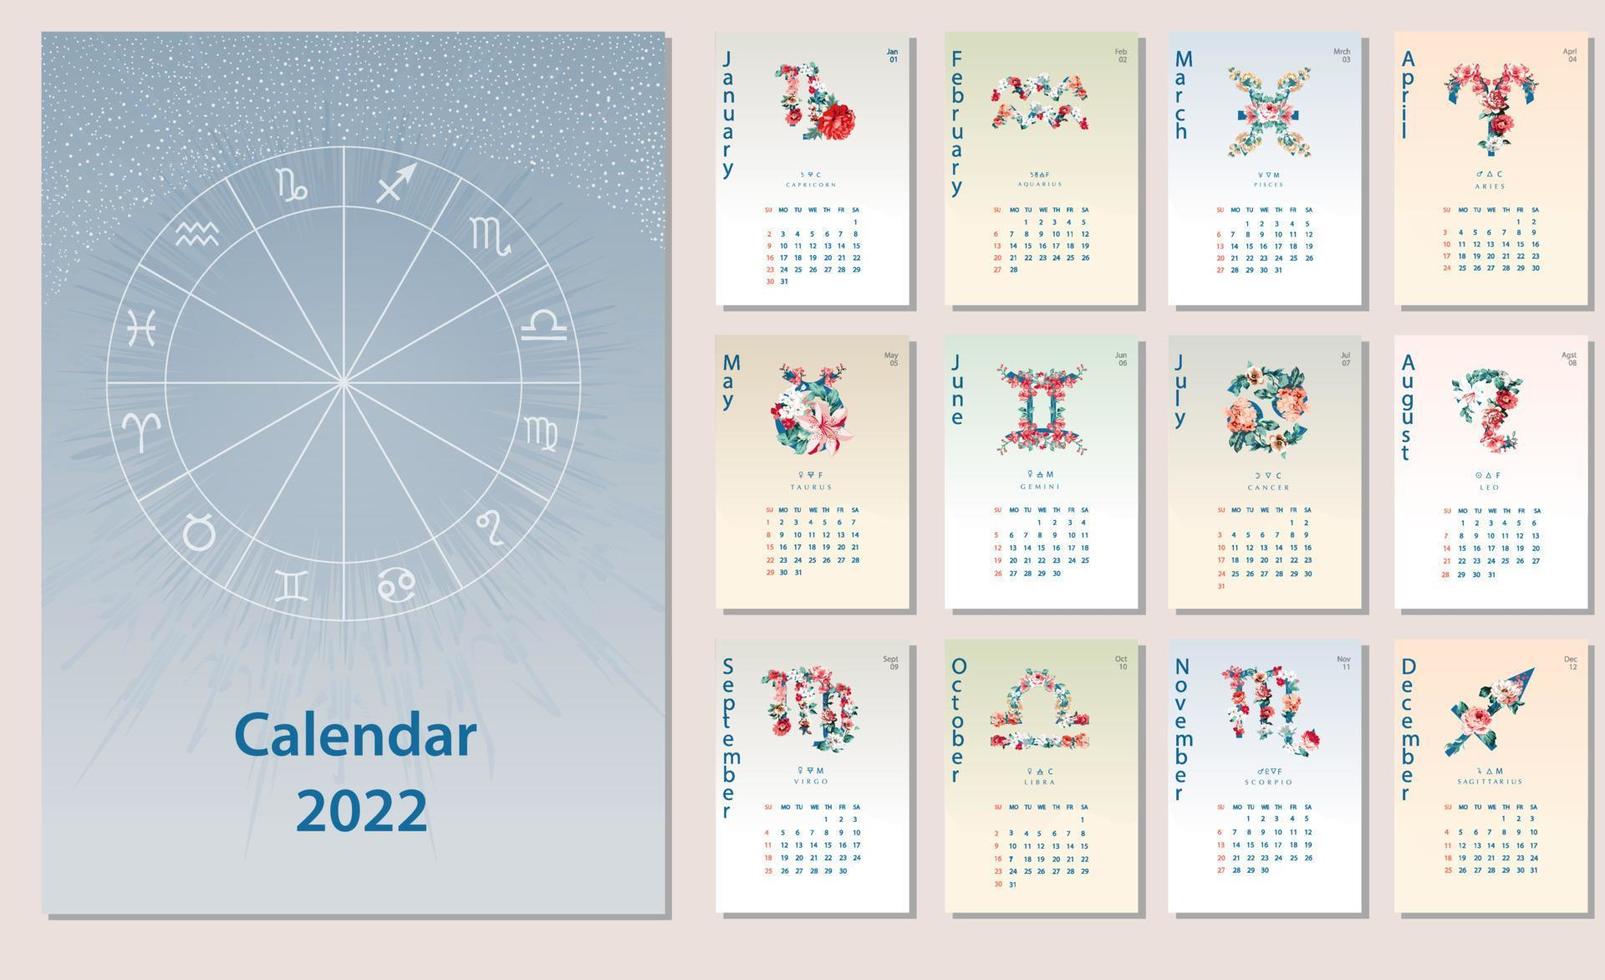 calendário criativo 2022 com signos do horóscopo, símbolos do zodíaco feitos com ilustração floral. pode ser usado para web, impressão, cartão, pôster, banner, marcador. vetor